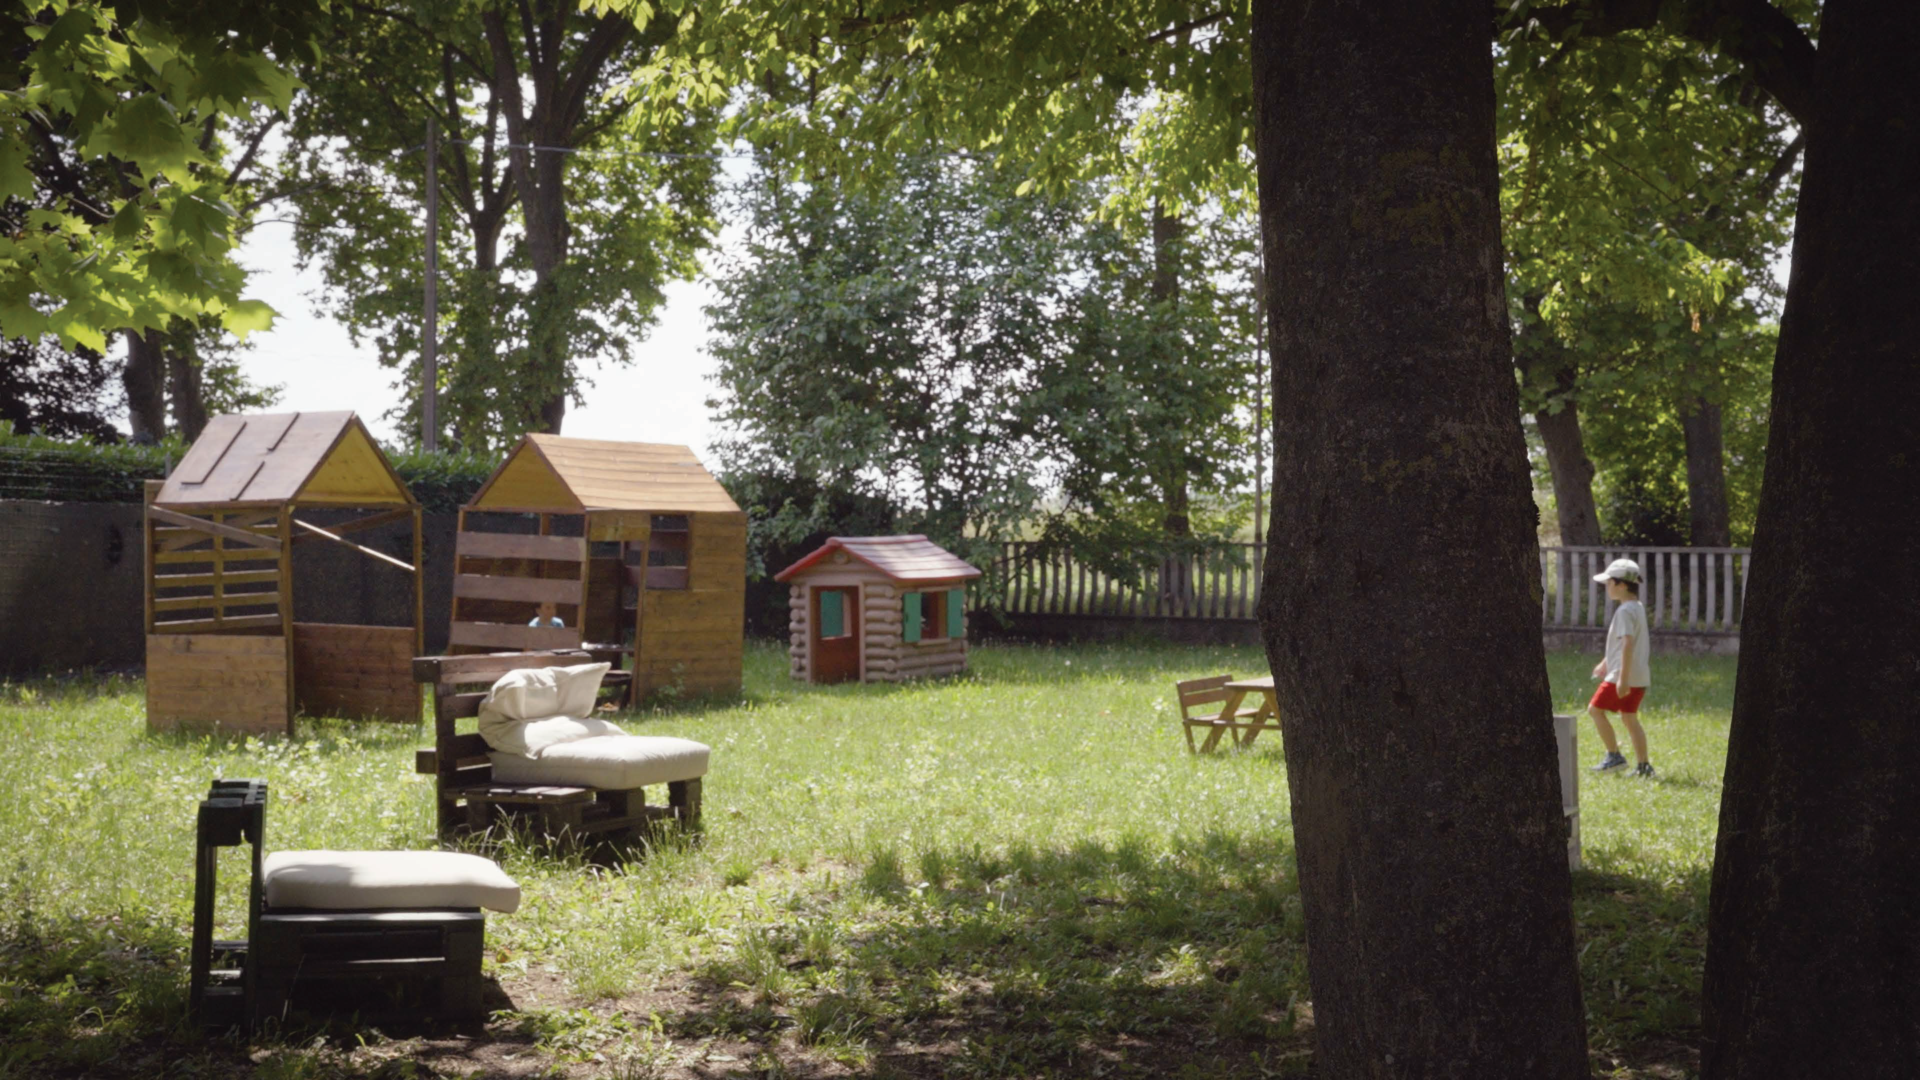 Una porzione del parco che circonda la scuola montessoriana, con scivoli e casette di legno.